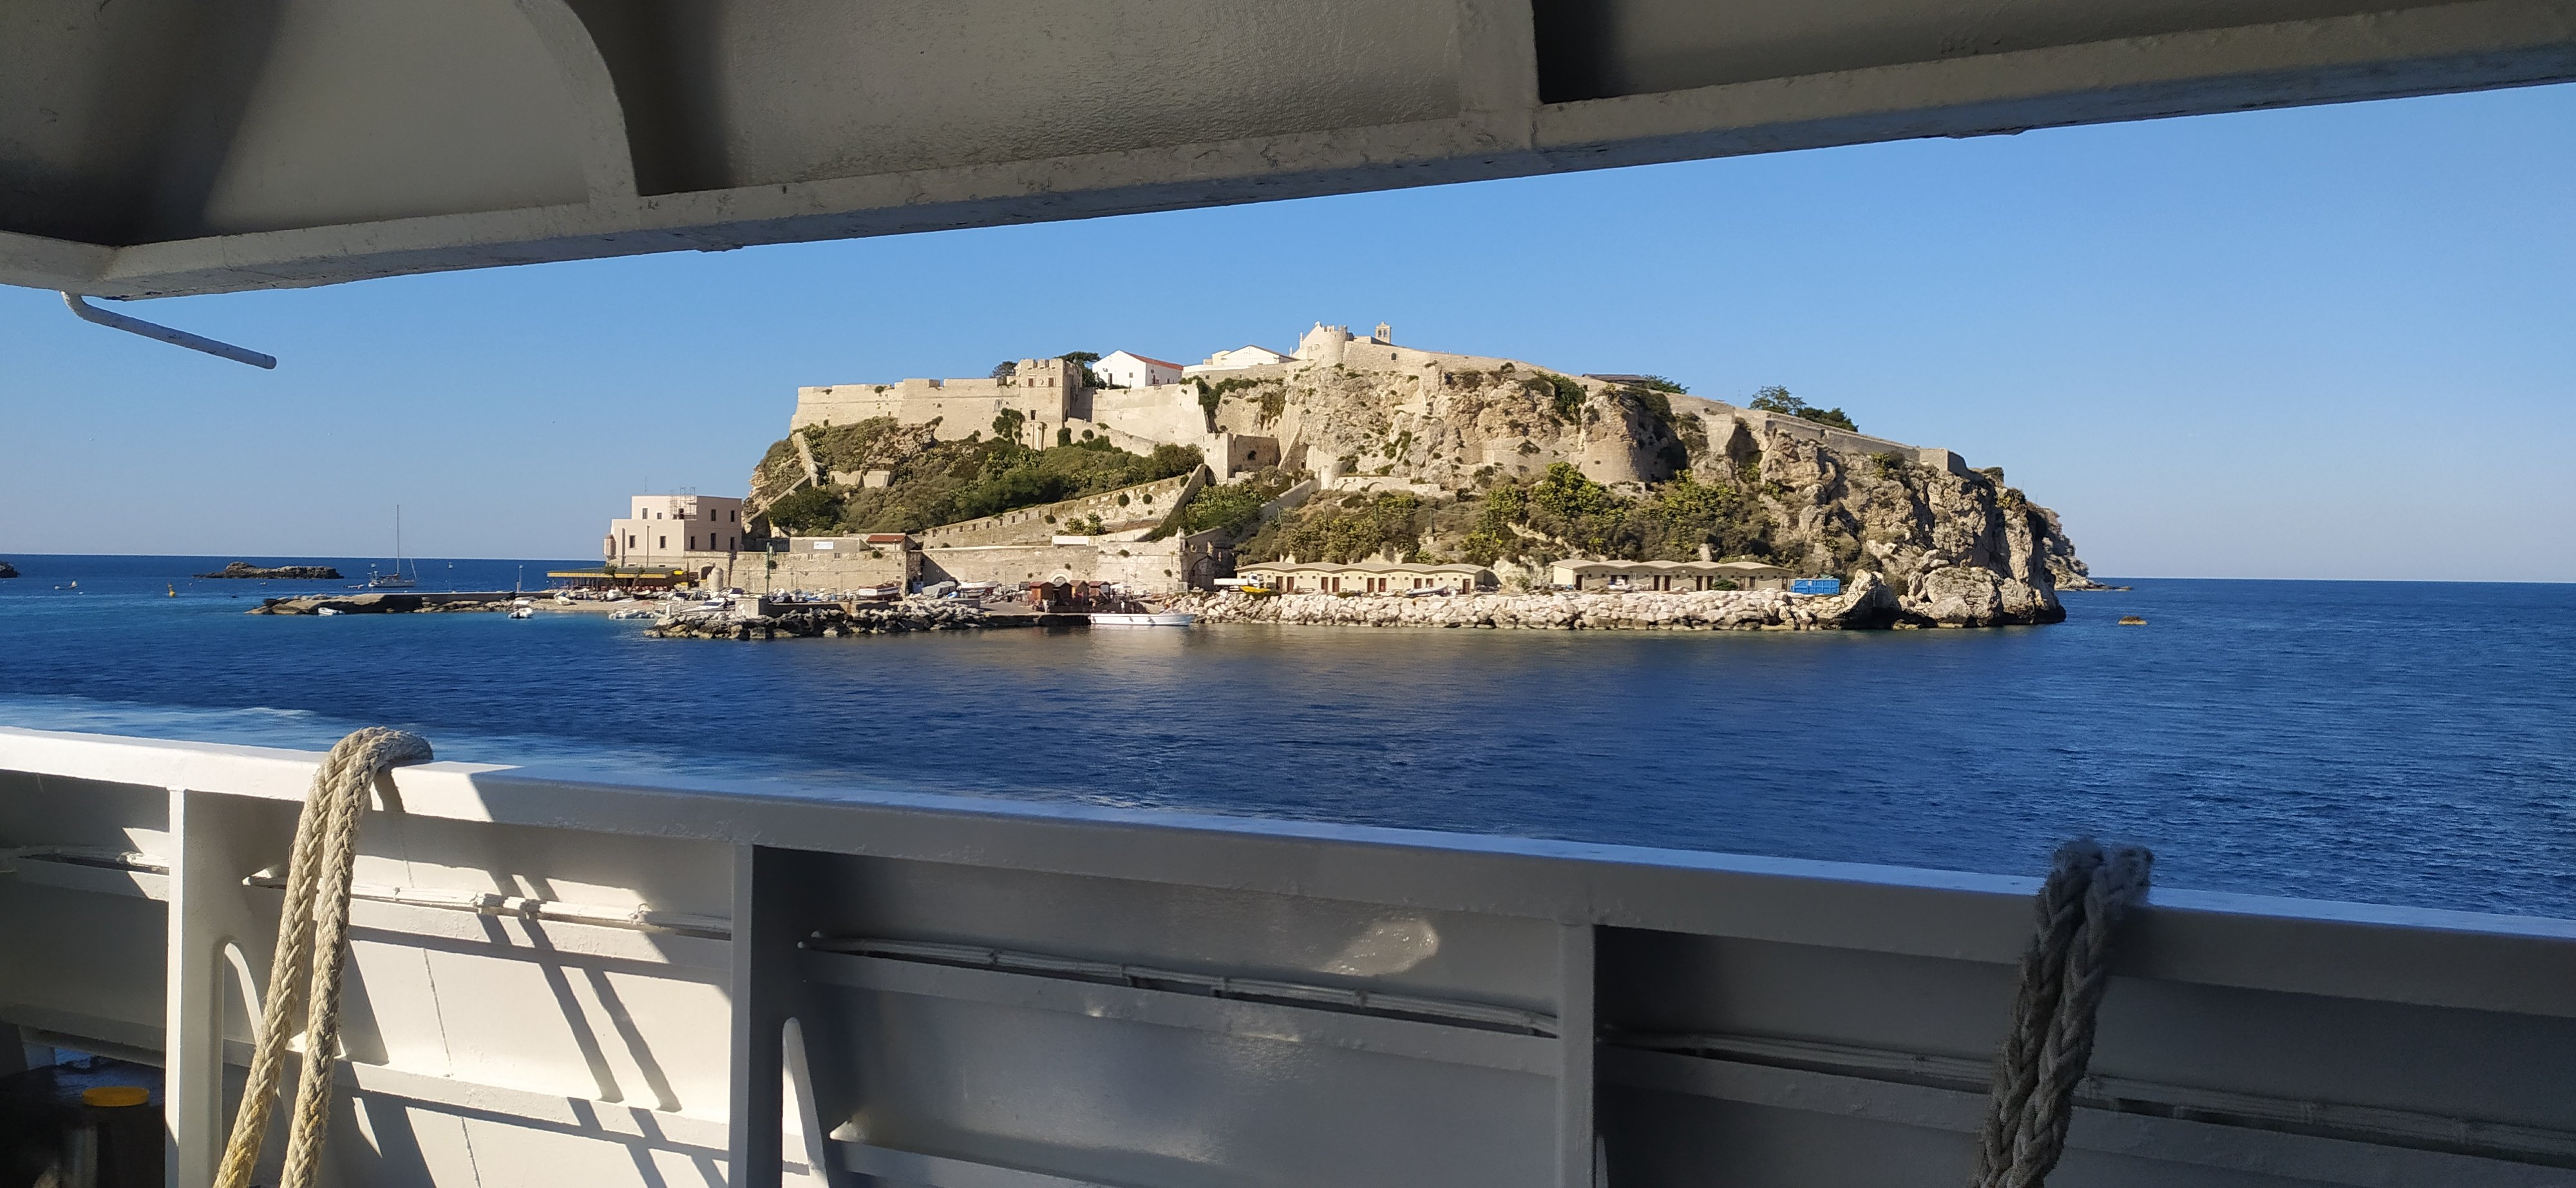 L'isola di San Nicola vista dal traghetto - foto di Fabio Fiori